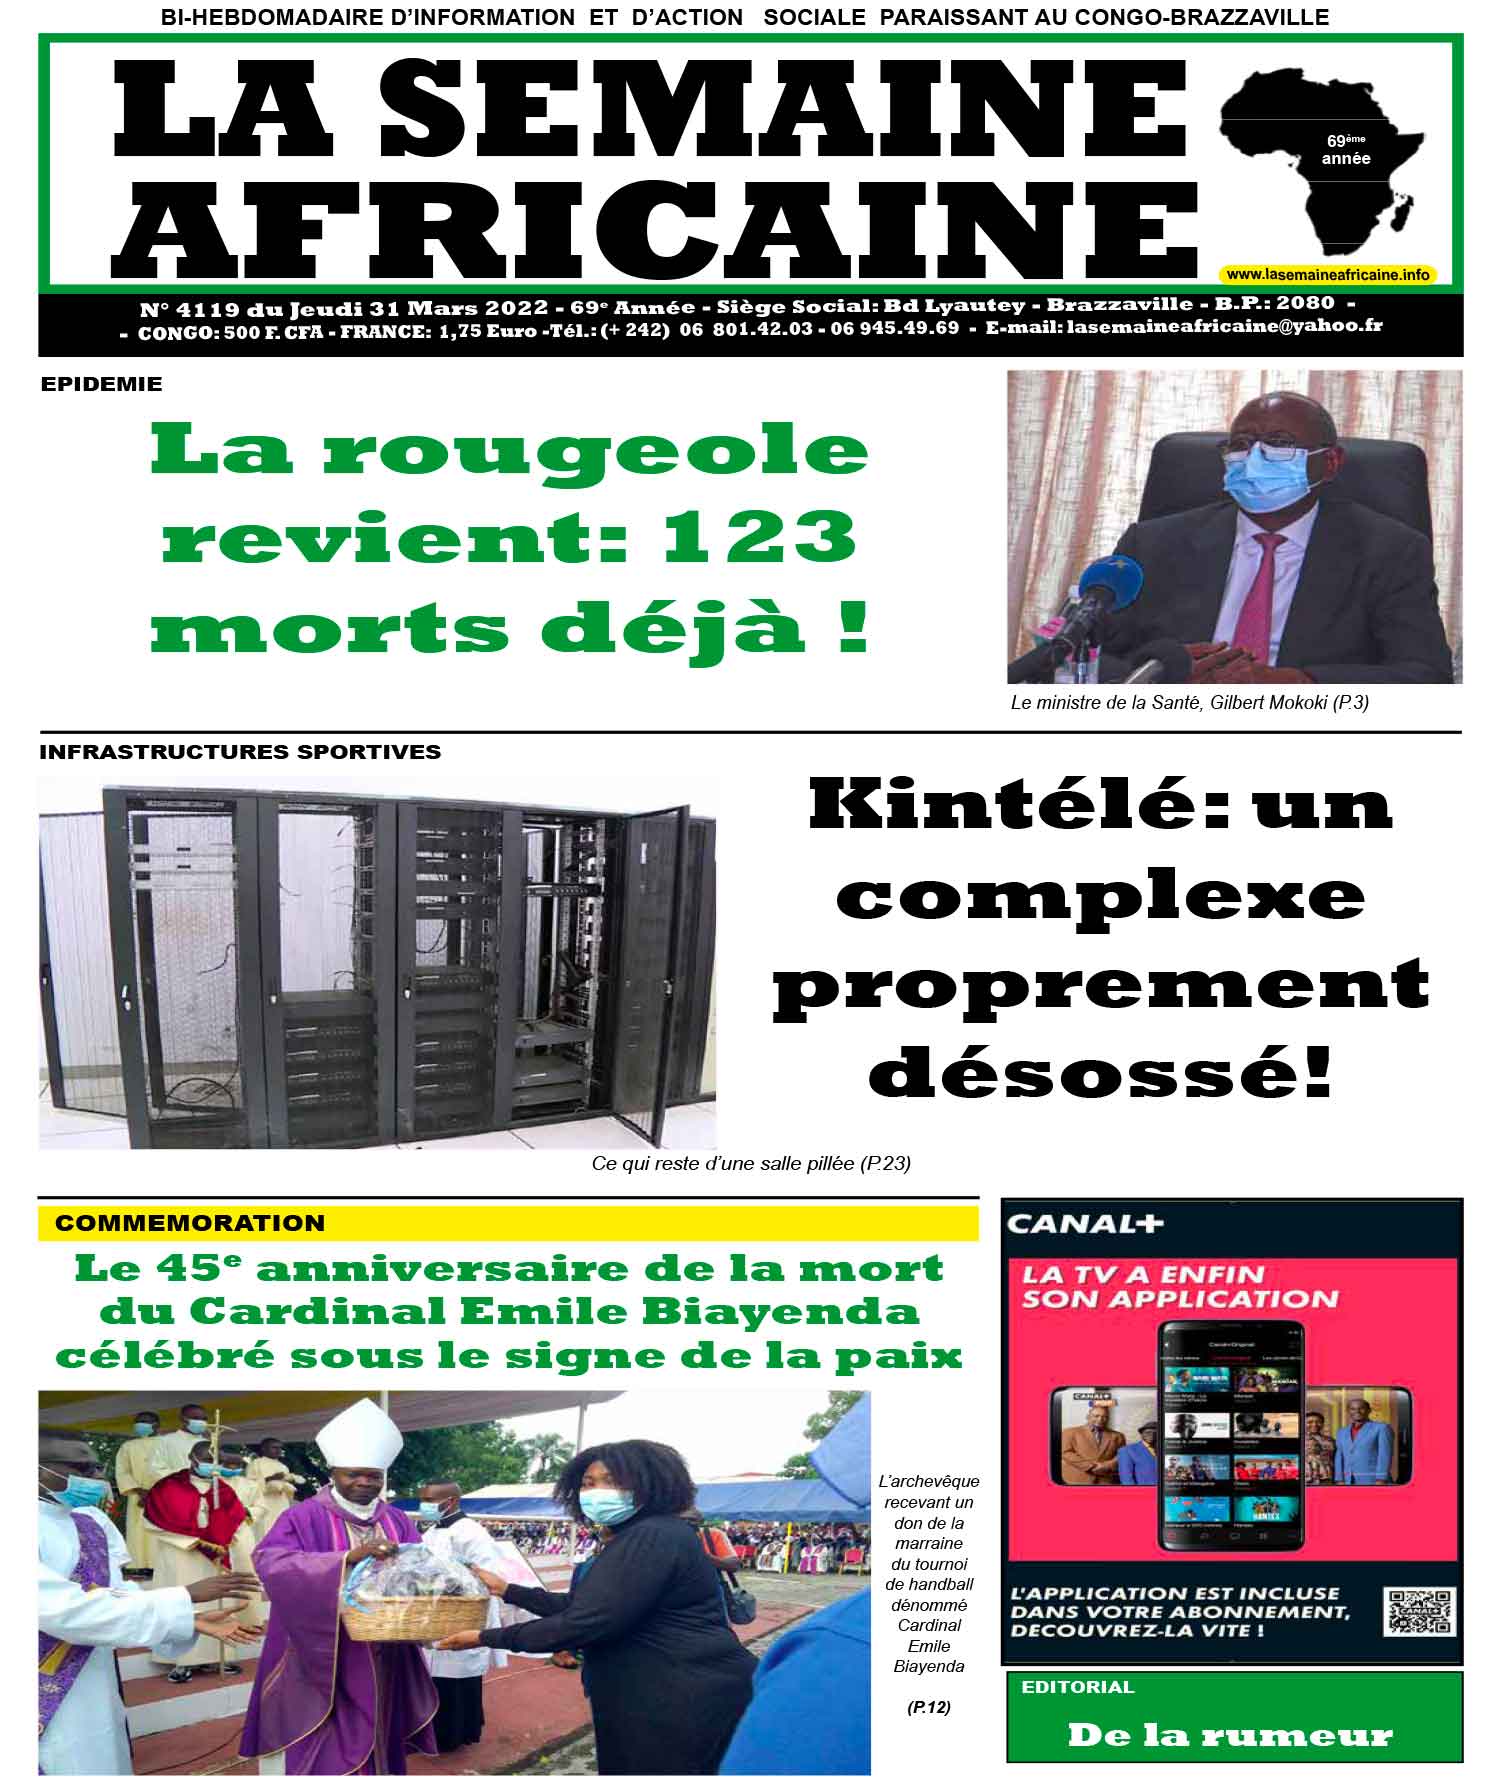 Cover La Semaine Africaine - 4119 